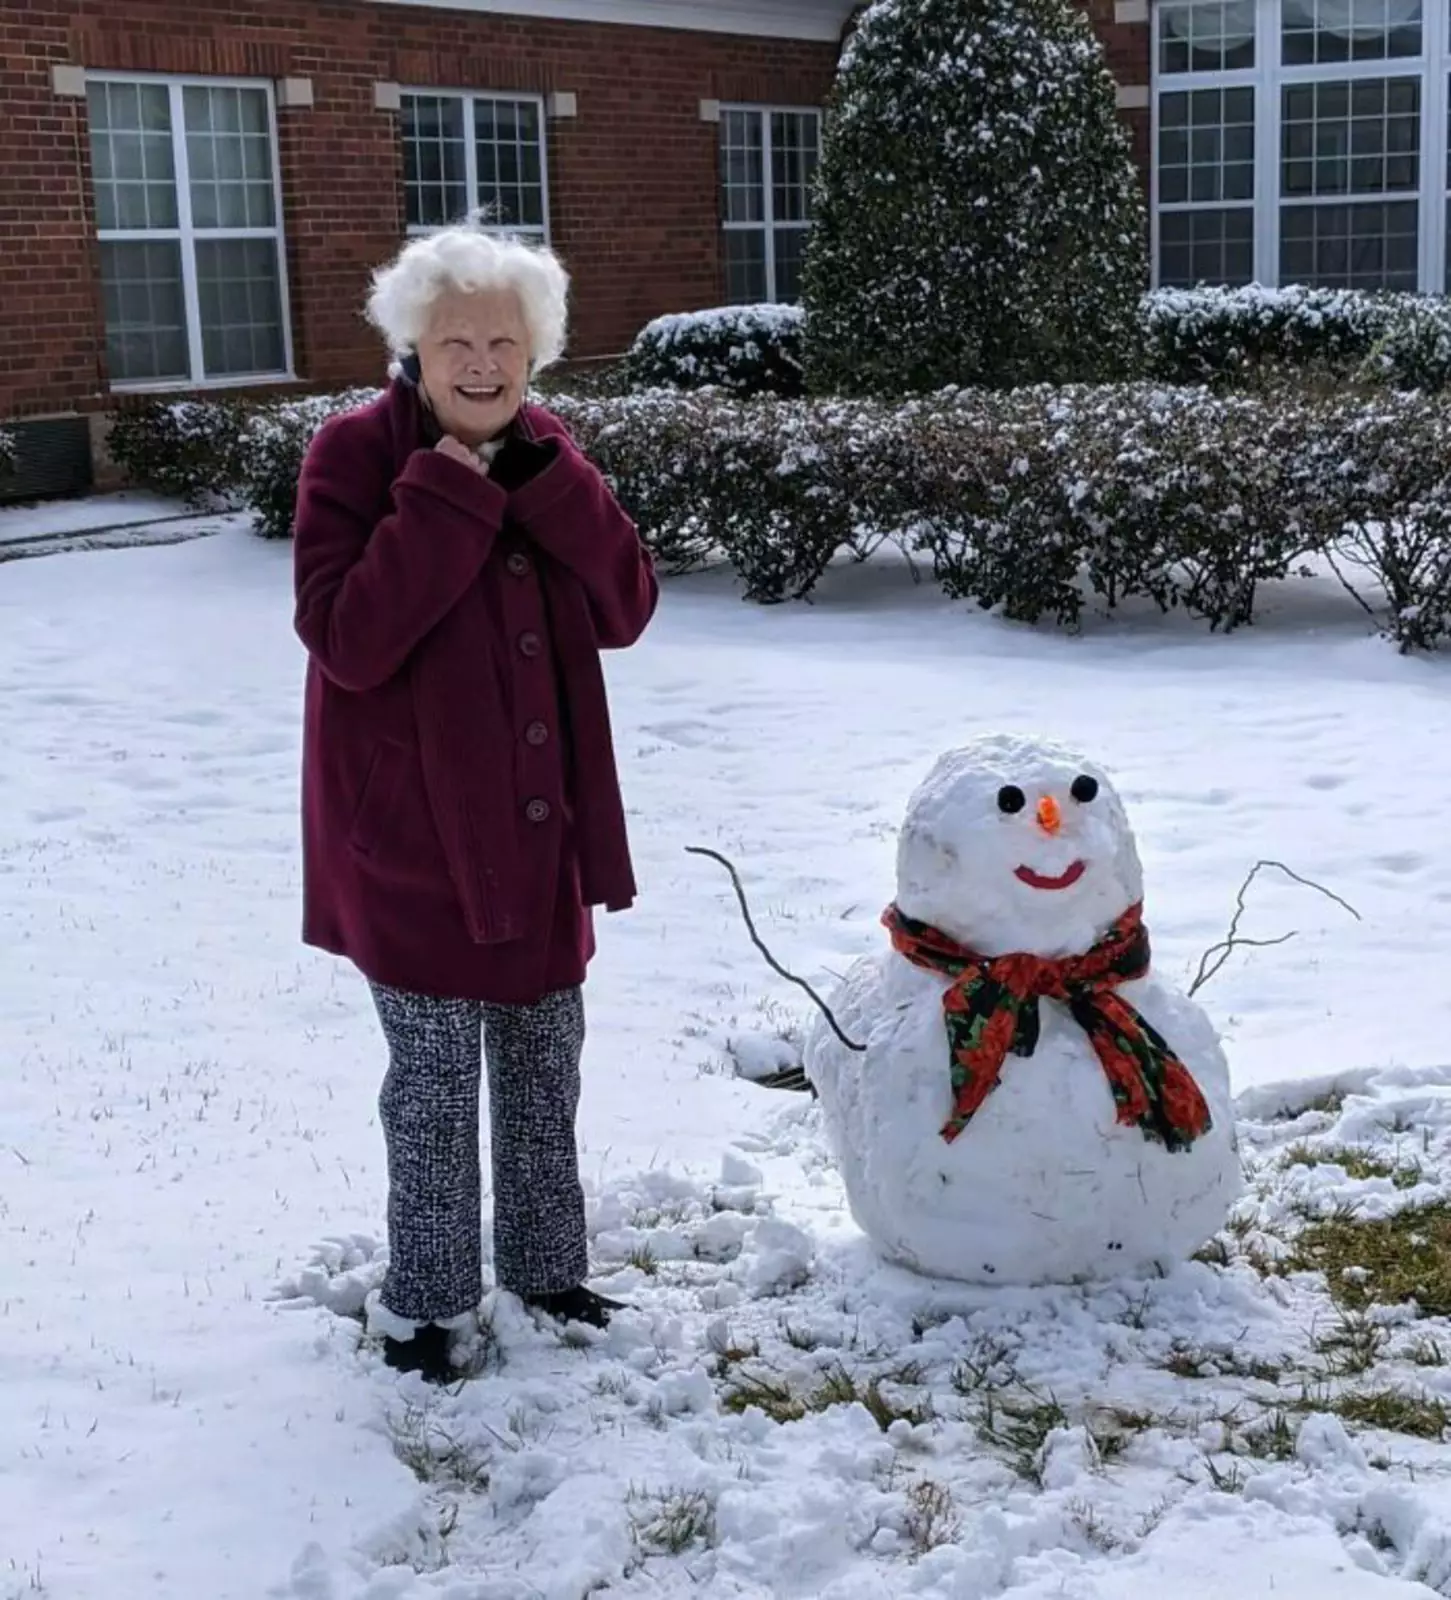 "Моя бабушка построила снеговика, и у них обеих самые красивые улыбки".